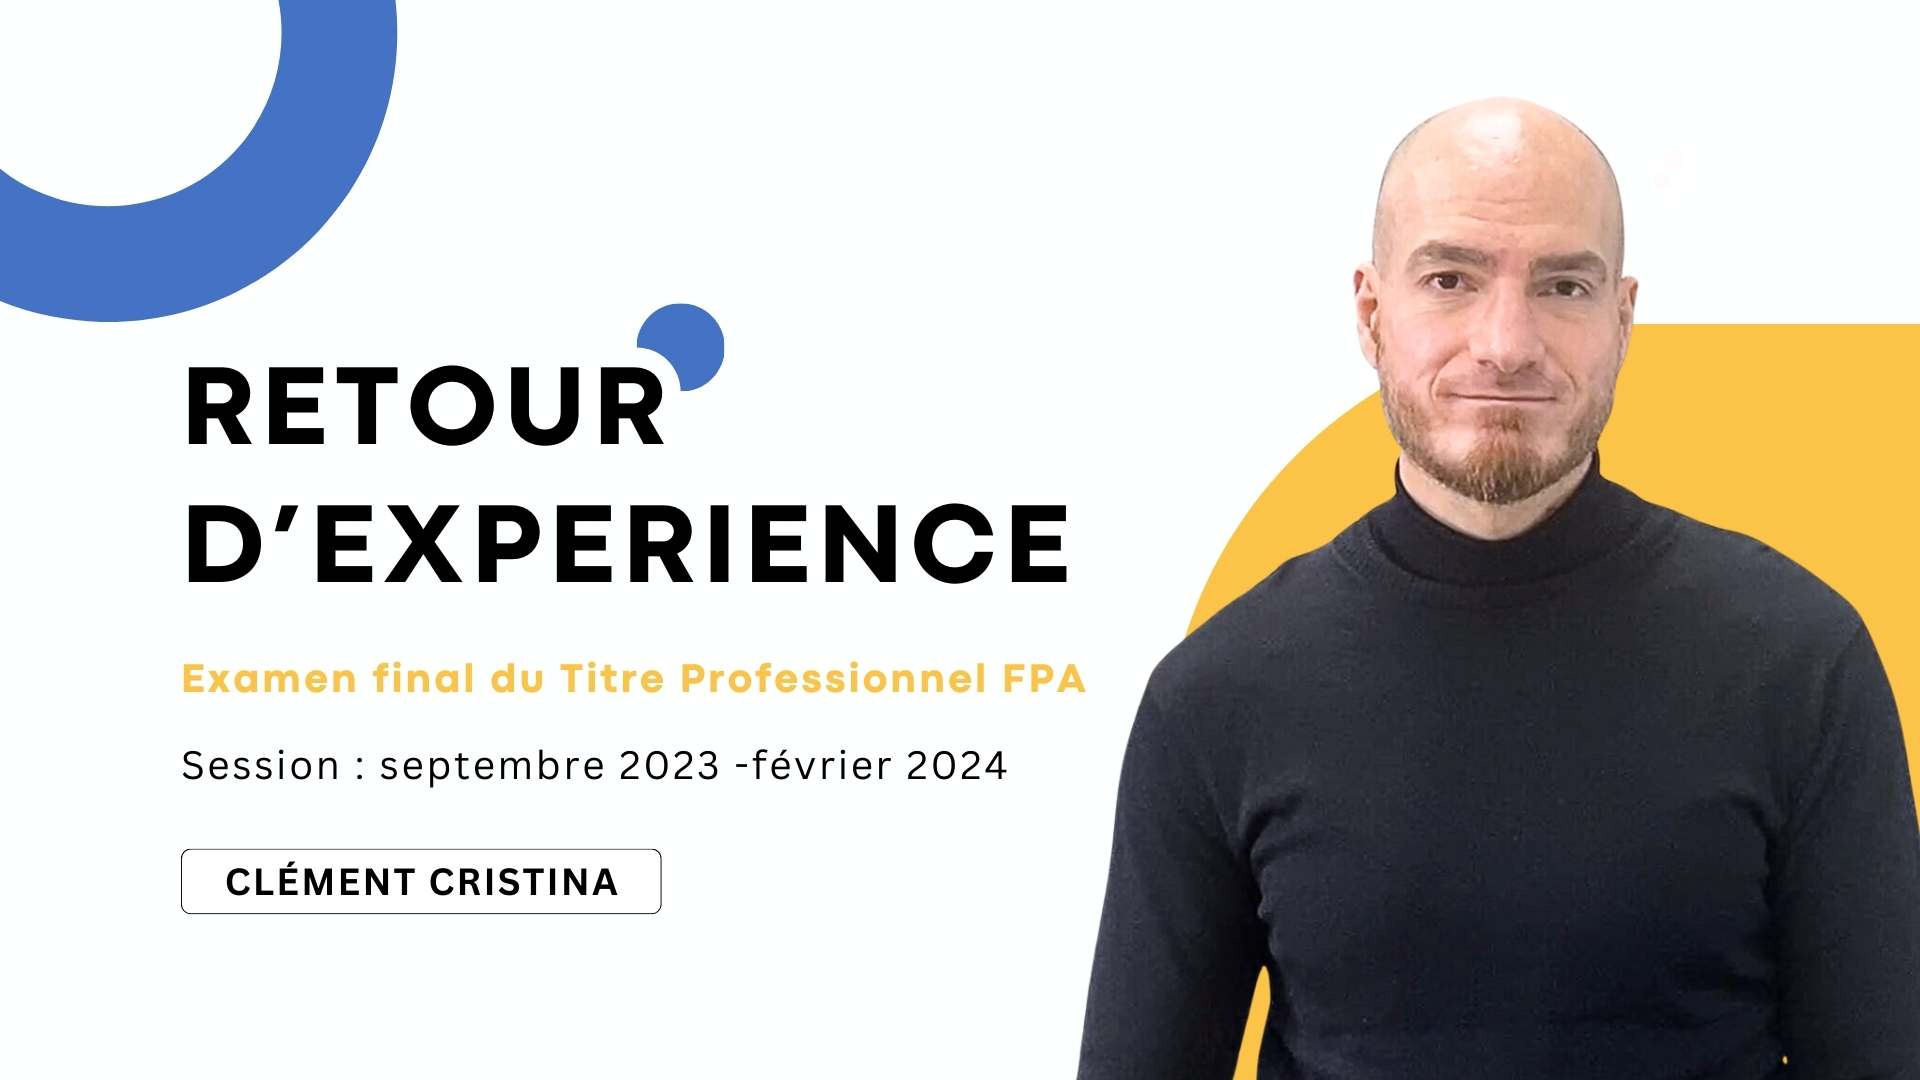 Retour titre professionnel Formateur FPA Clément